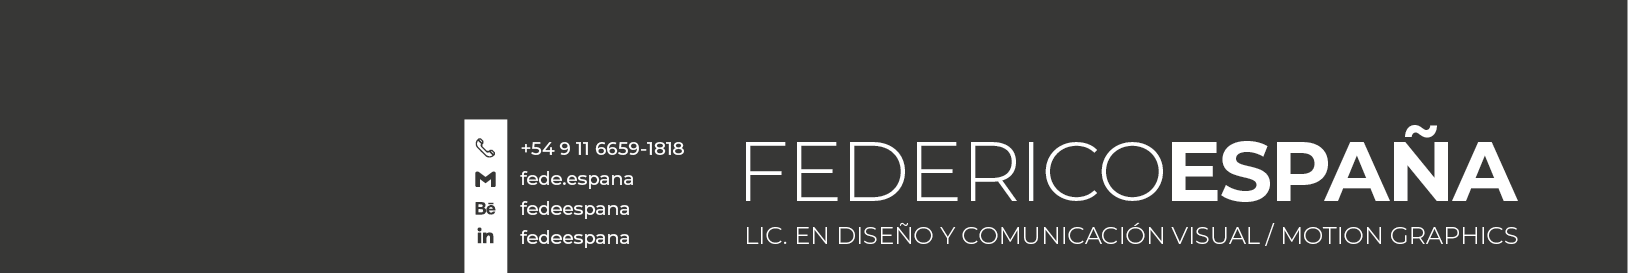 Federico España's profile banner